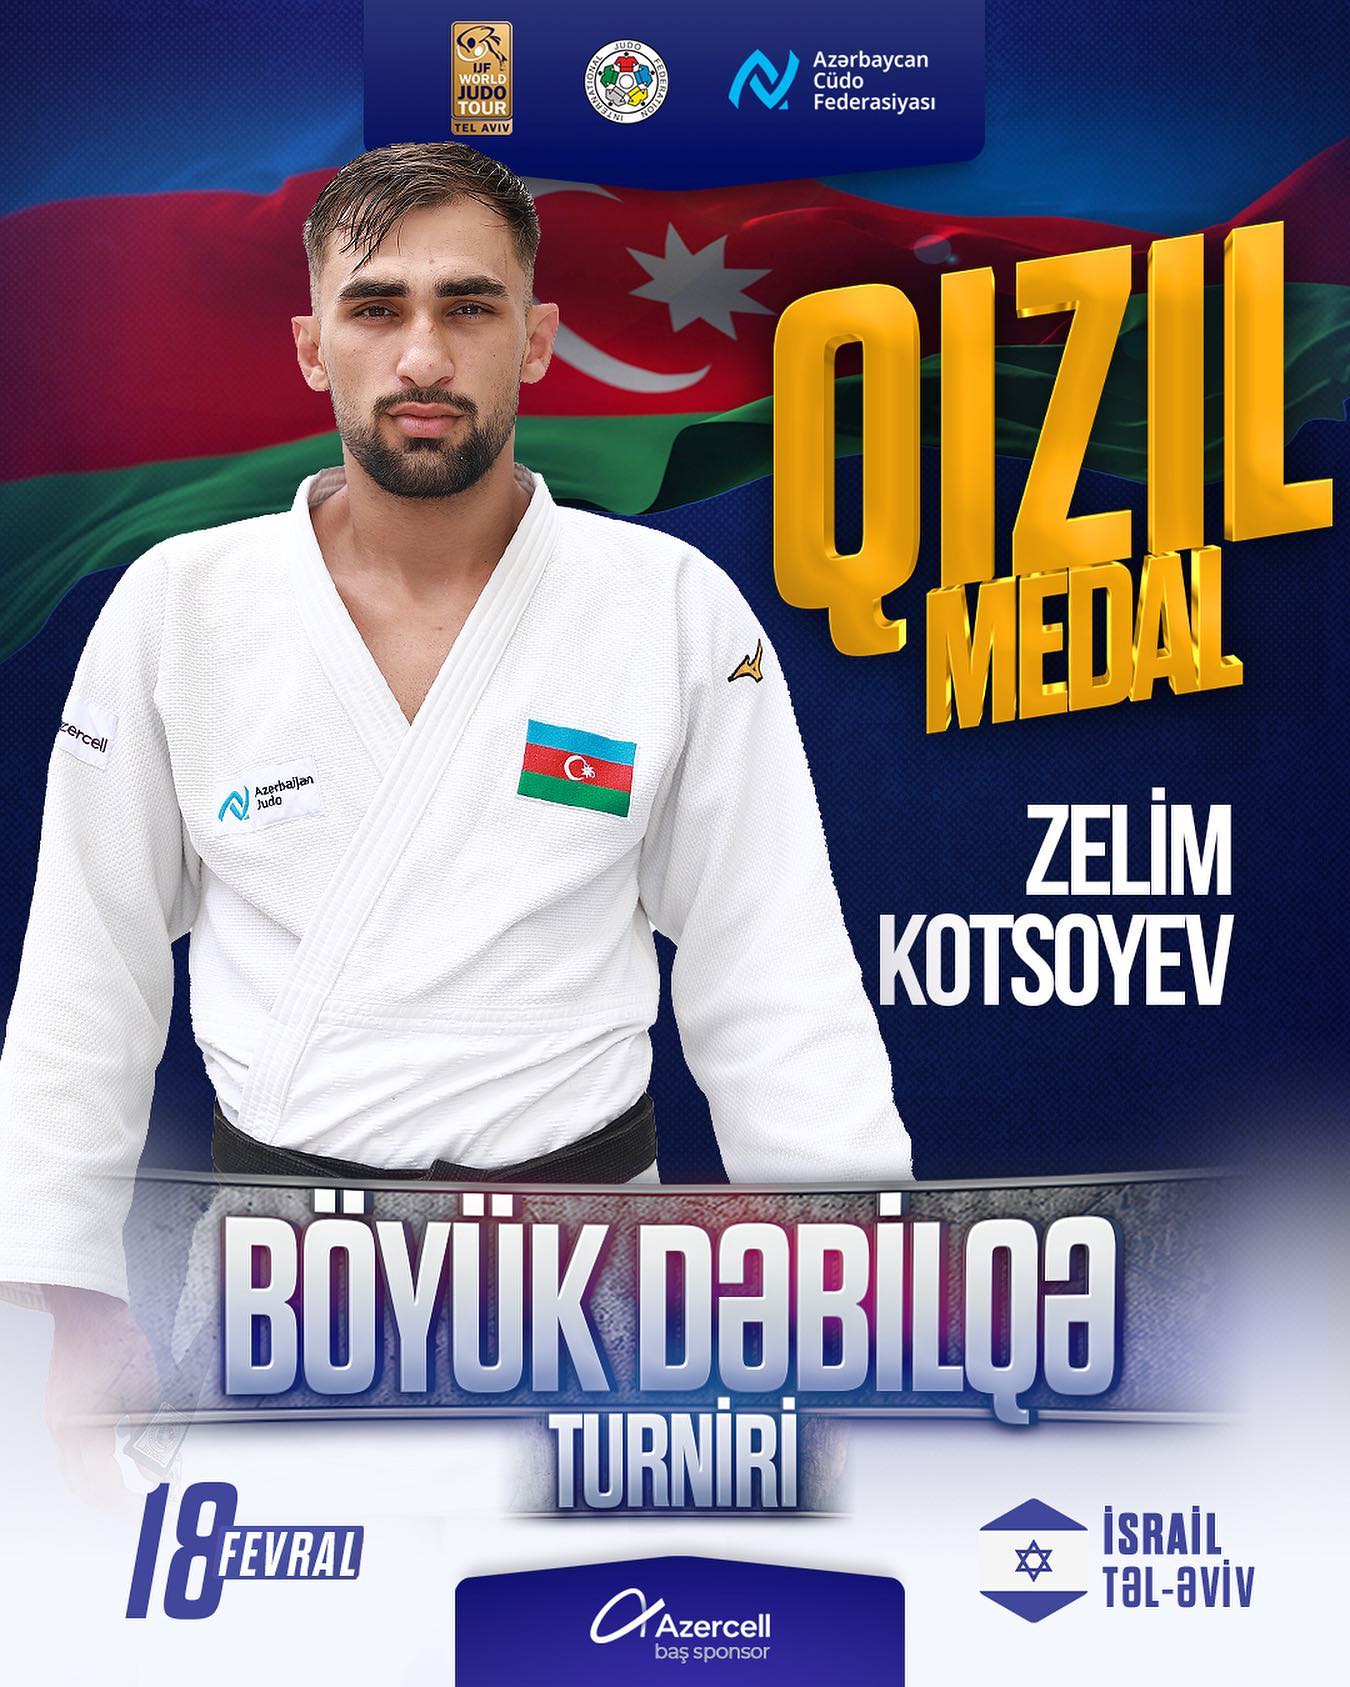 img/posts/judo-club-2012nin-uzvu-zelim-kotsoyev-boyuk-debilqe-turnirinin-qalibi-oldu-2023-02-19-001719/1.jpg